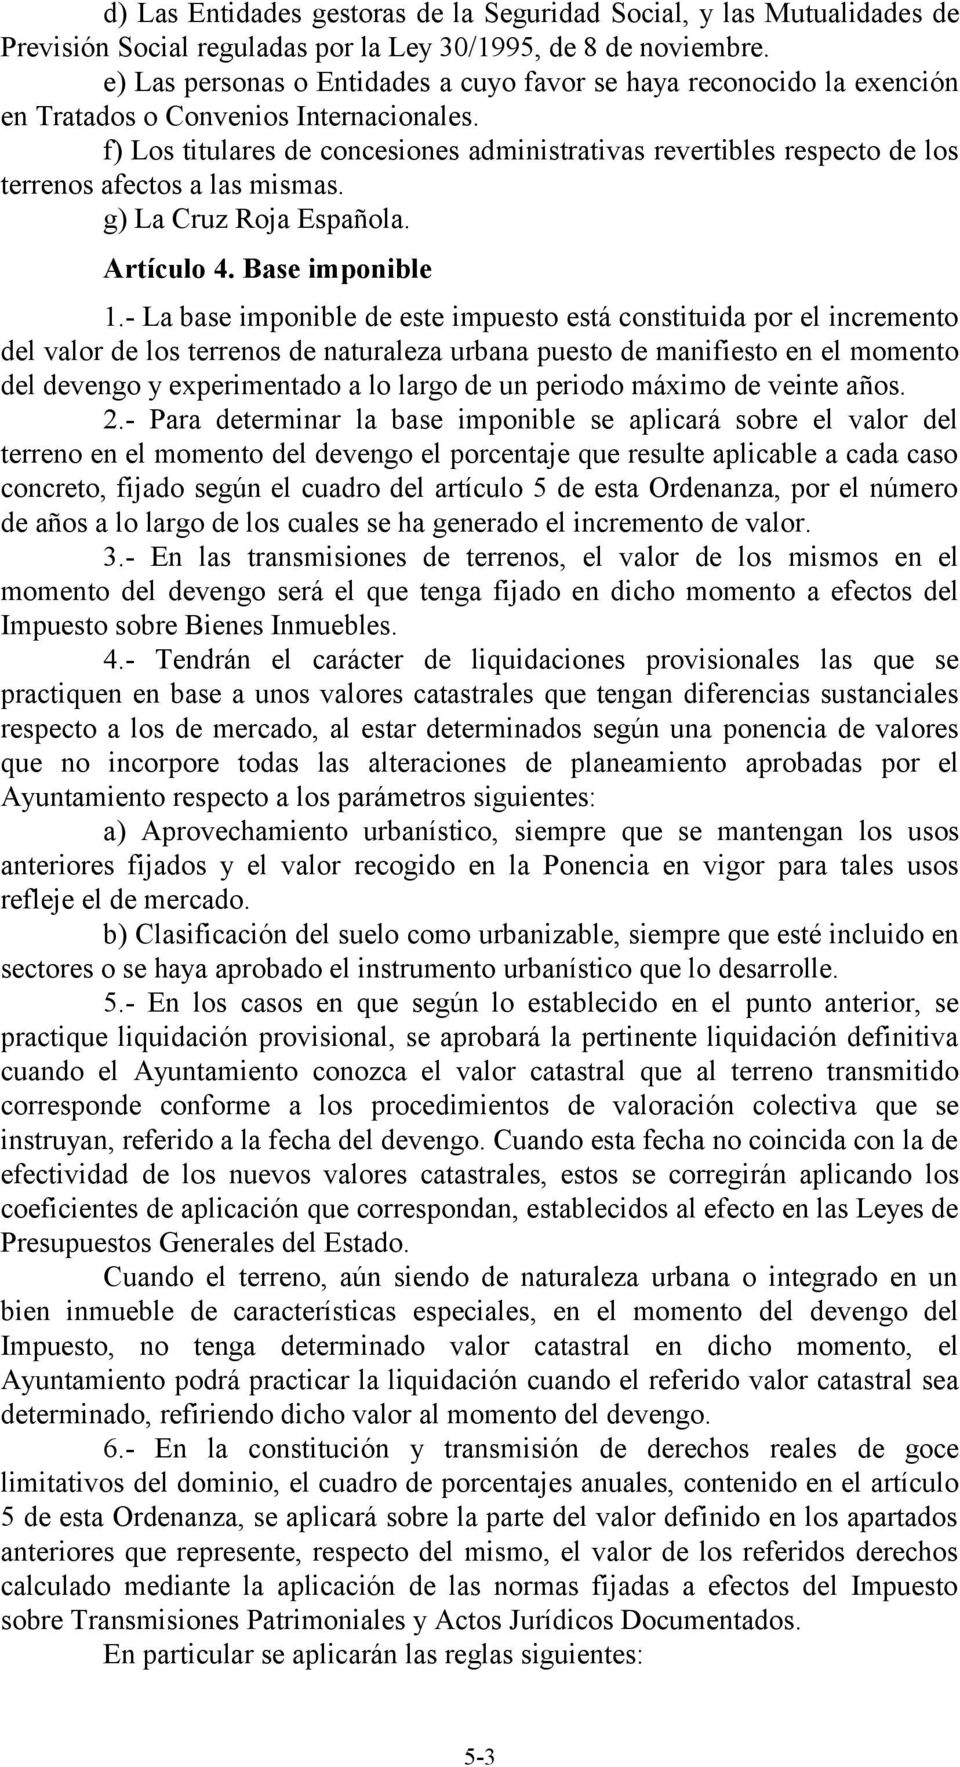 f) Los titulares de concesiones administrativas revertibles respecto de los terrenos afectos a las mismas. g) La Cruz Roja Española. Artículo 4. Base imponible 1.